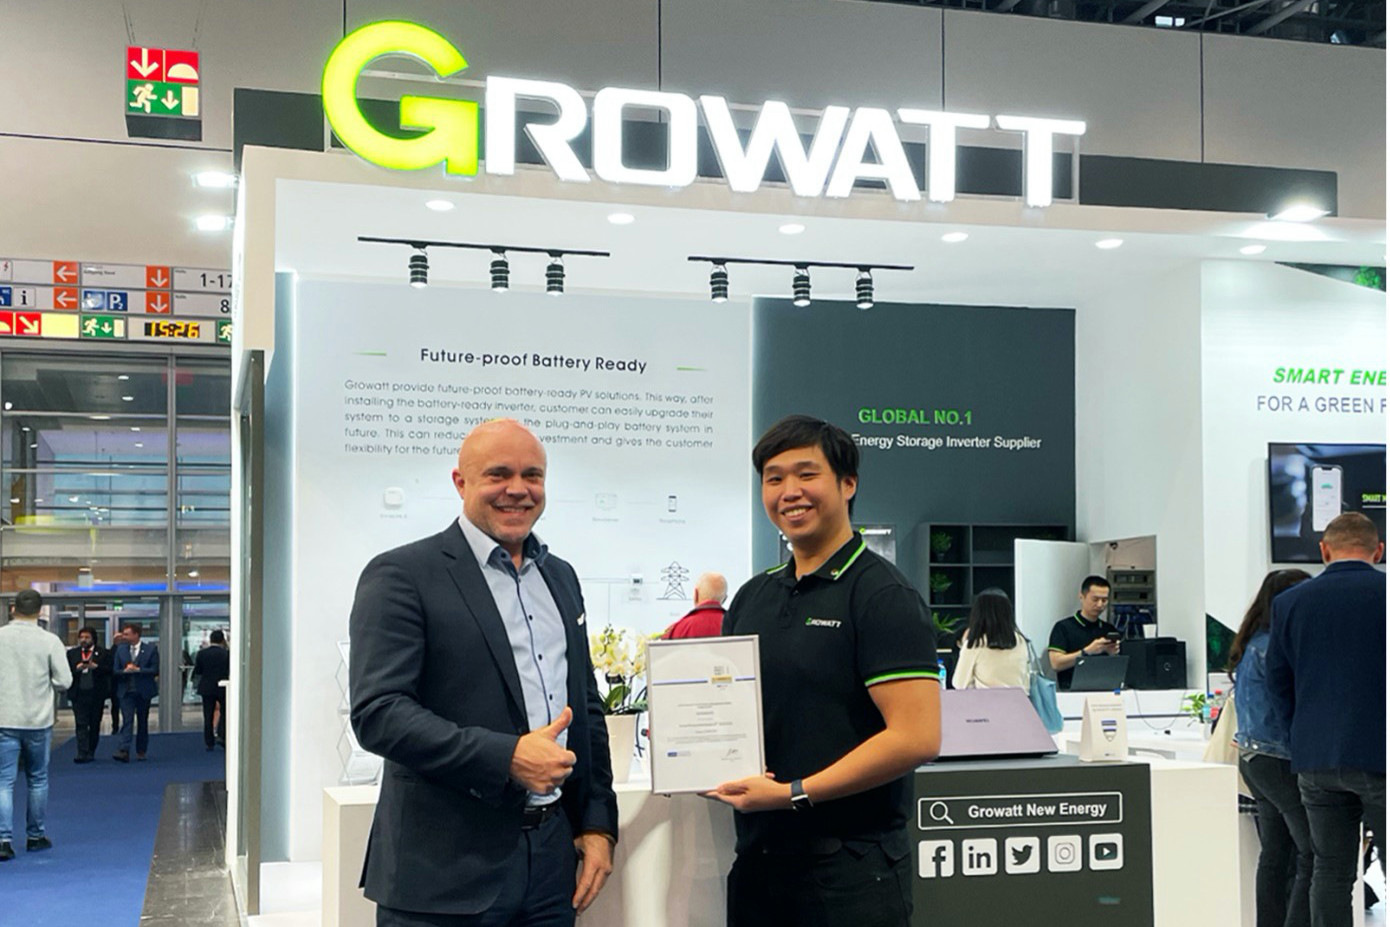 Growatt wins SolarProsumerAward for inverters